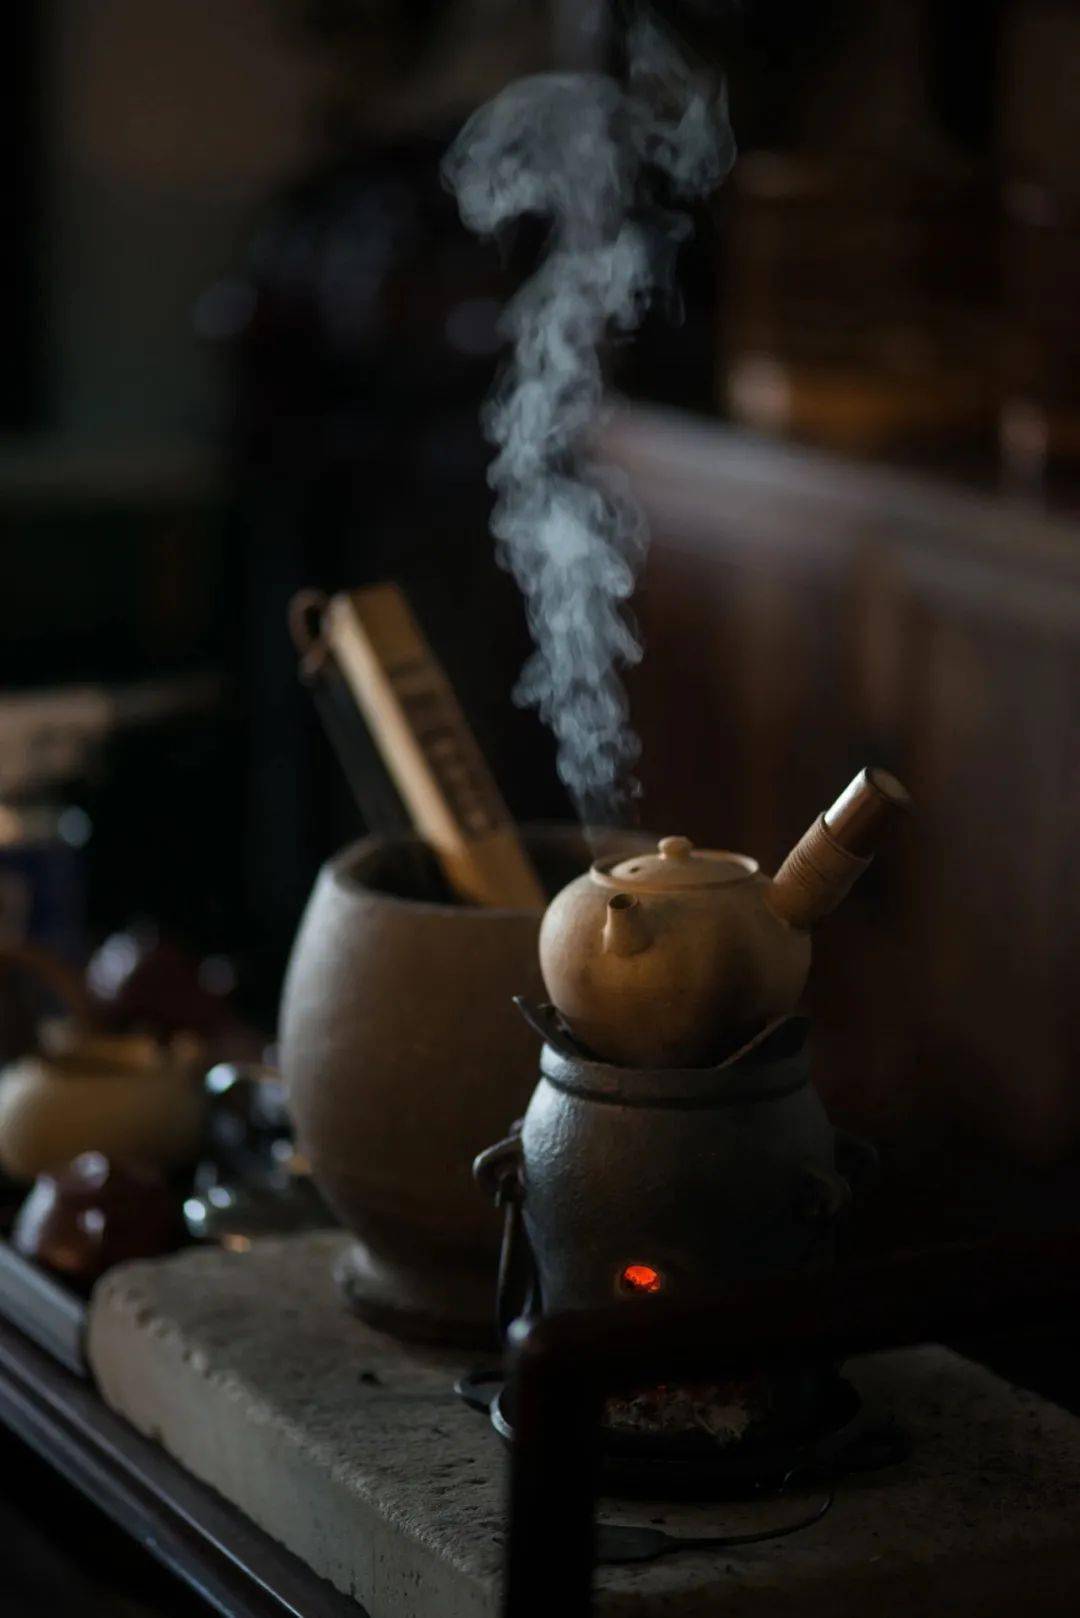 12月,你好 丨 煮一壶光阴的老白茶,愿你安然向暖!